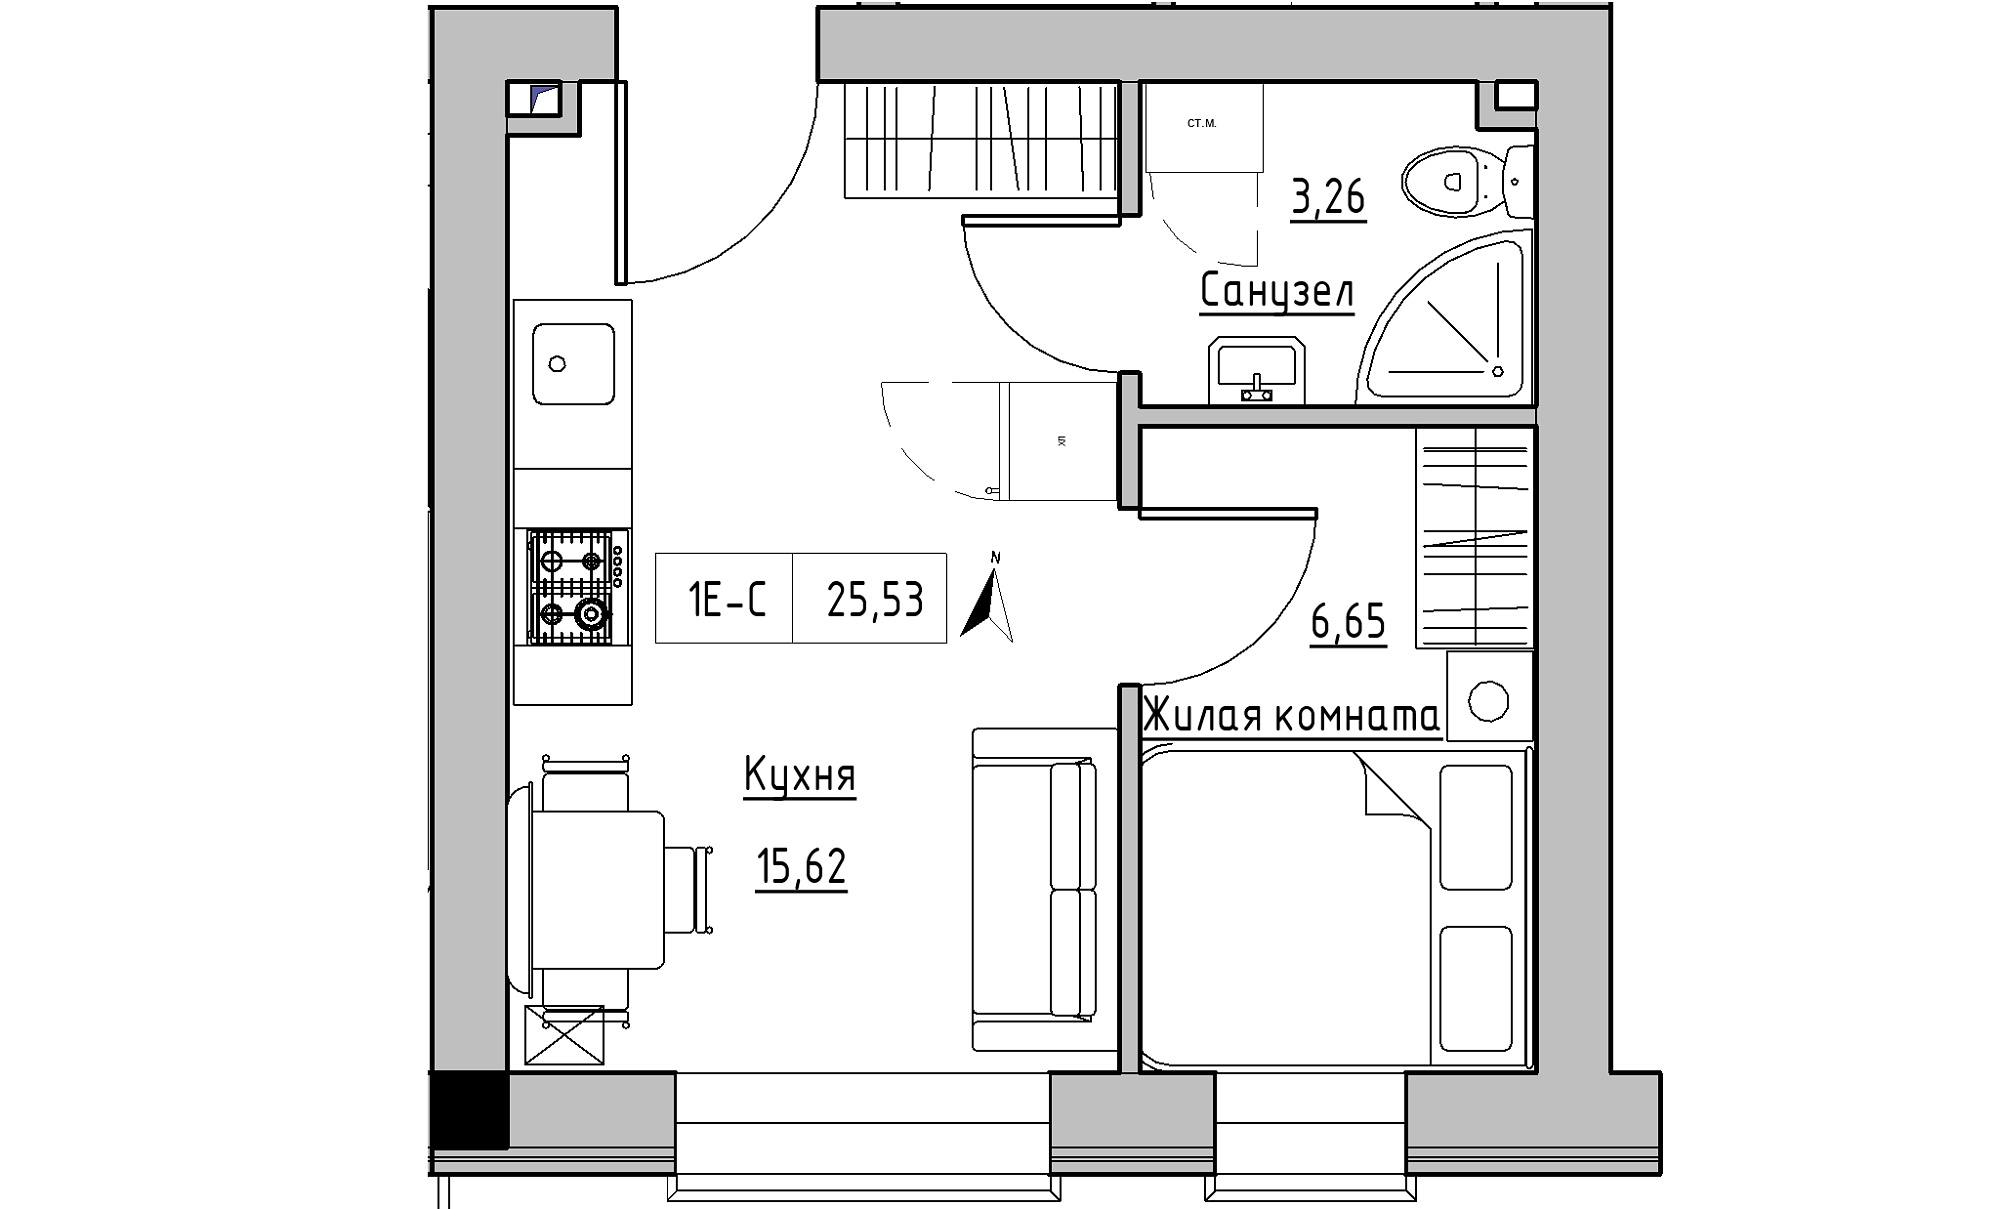 Планировка 1-к квартира площей 25.53м2, KS-016-03/0004.